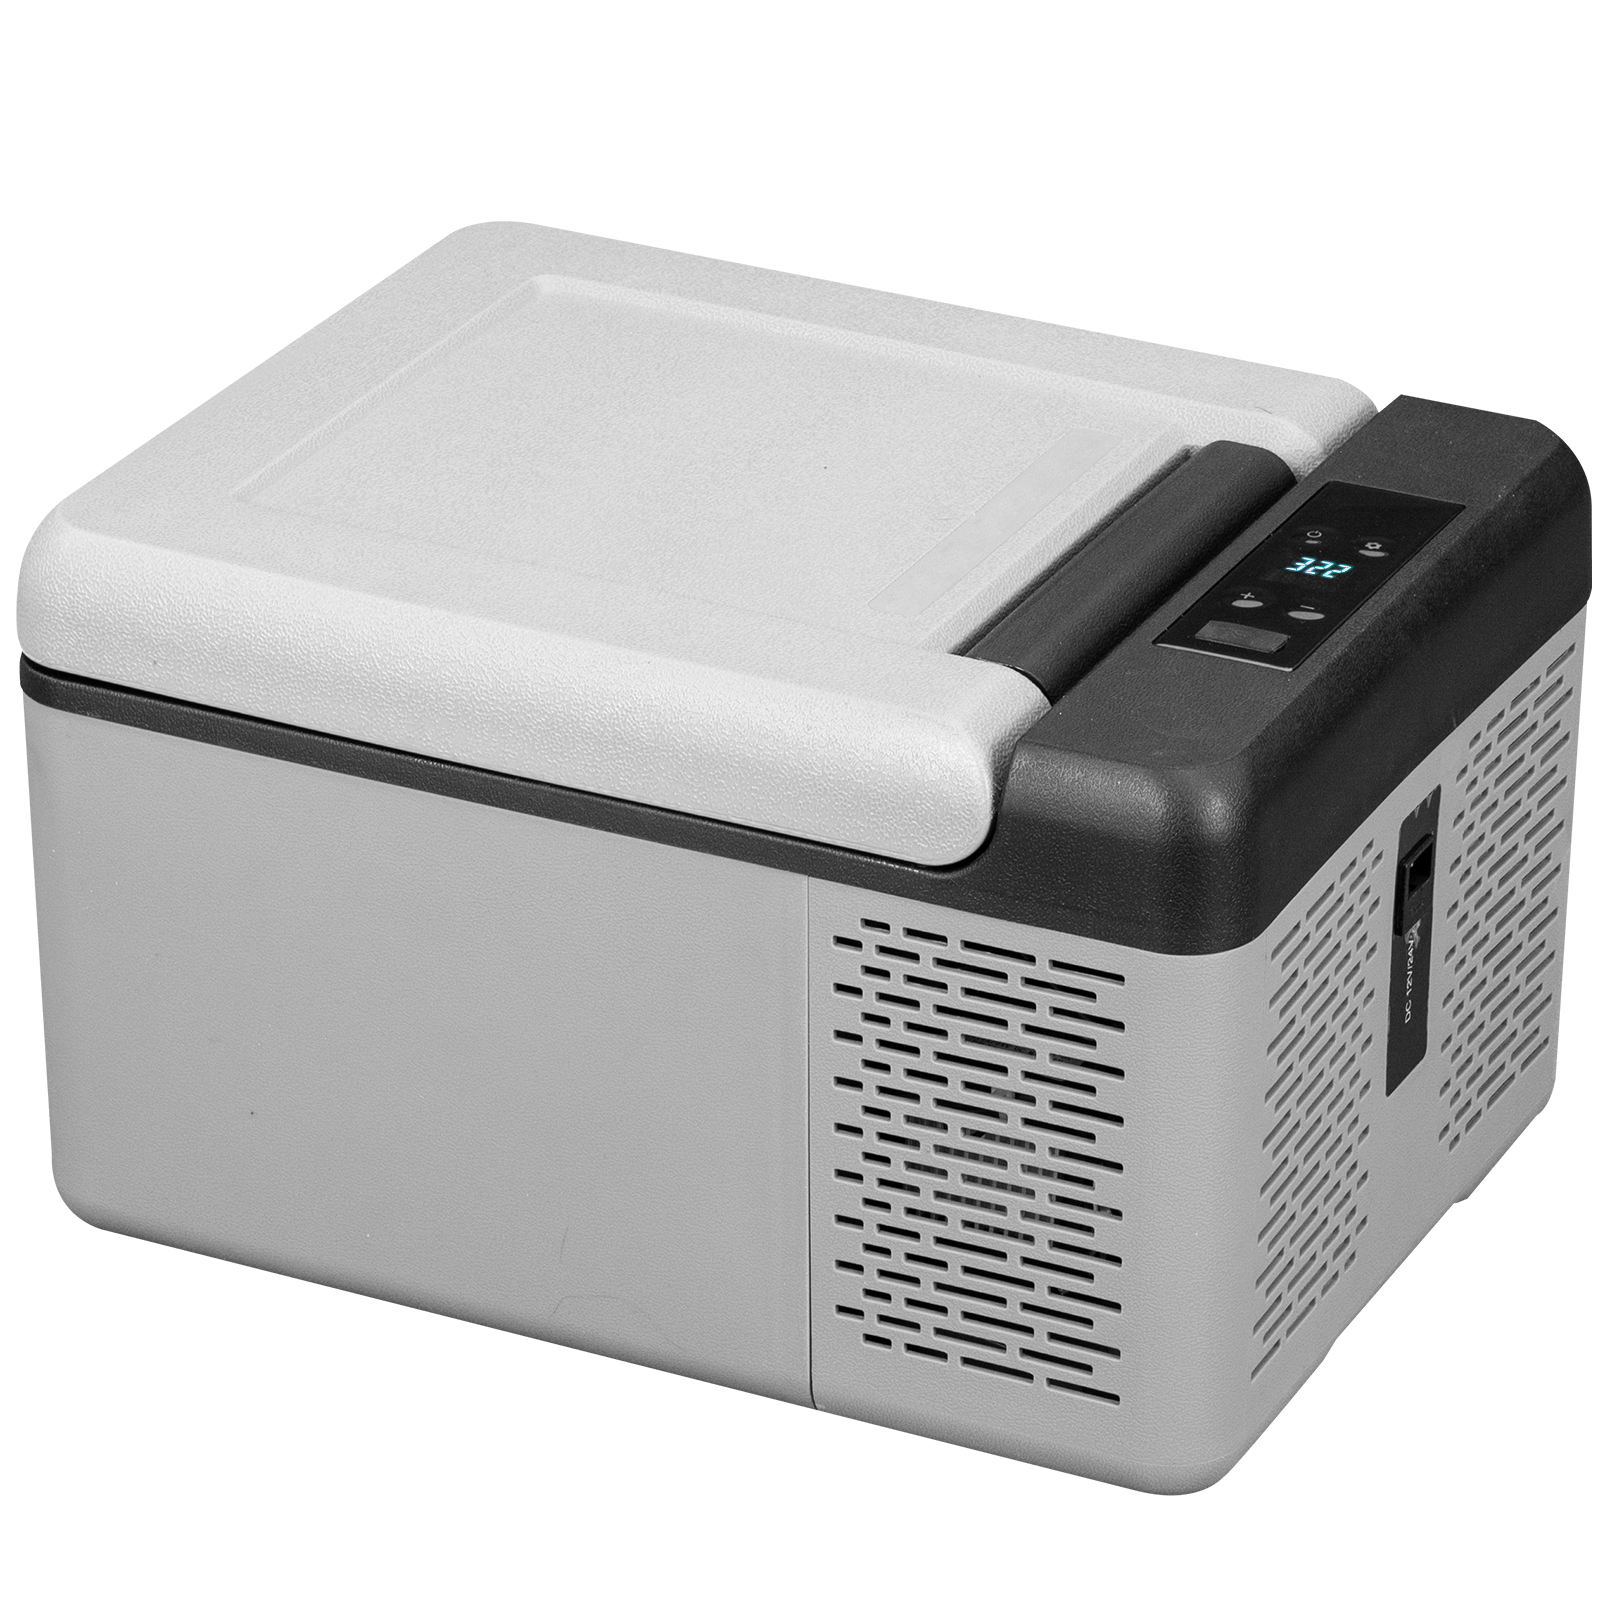 portable freezer,23 Qt,fast cooling